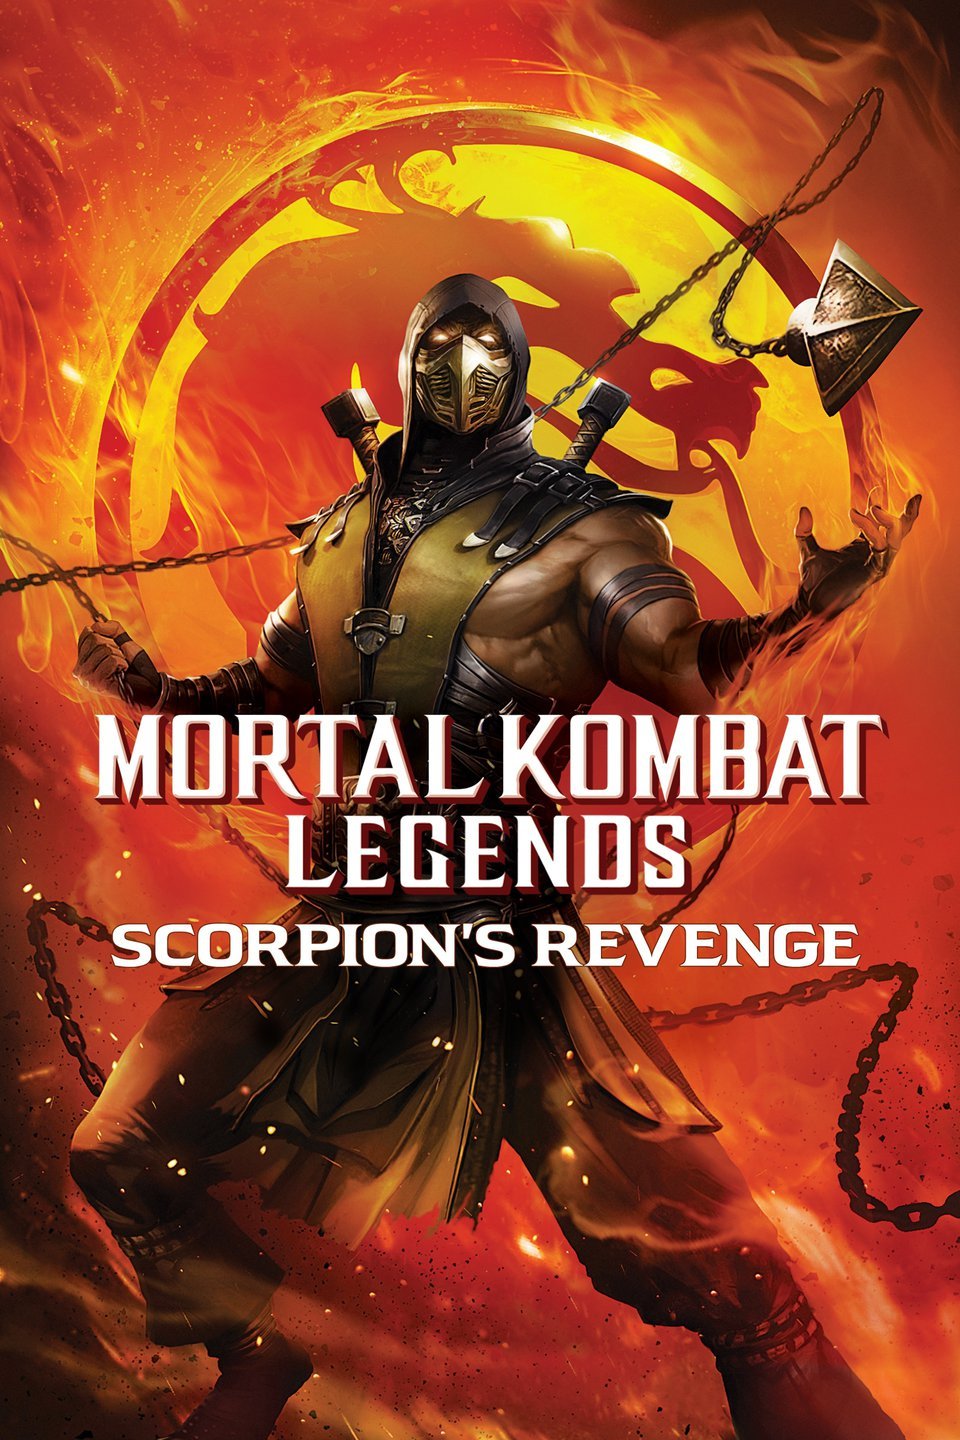 Mortal Kombat (Video Game 2011) - IMDb